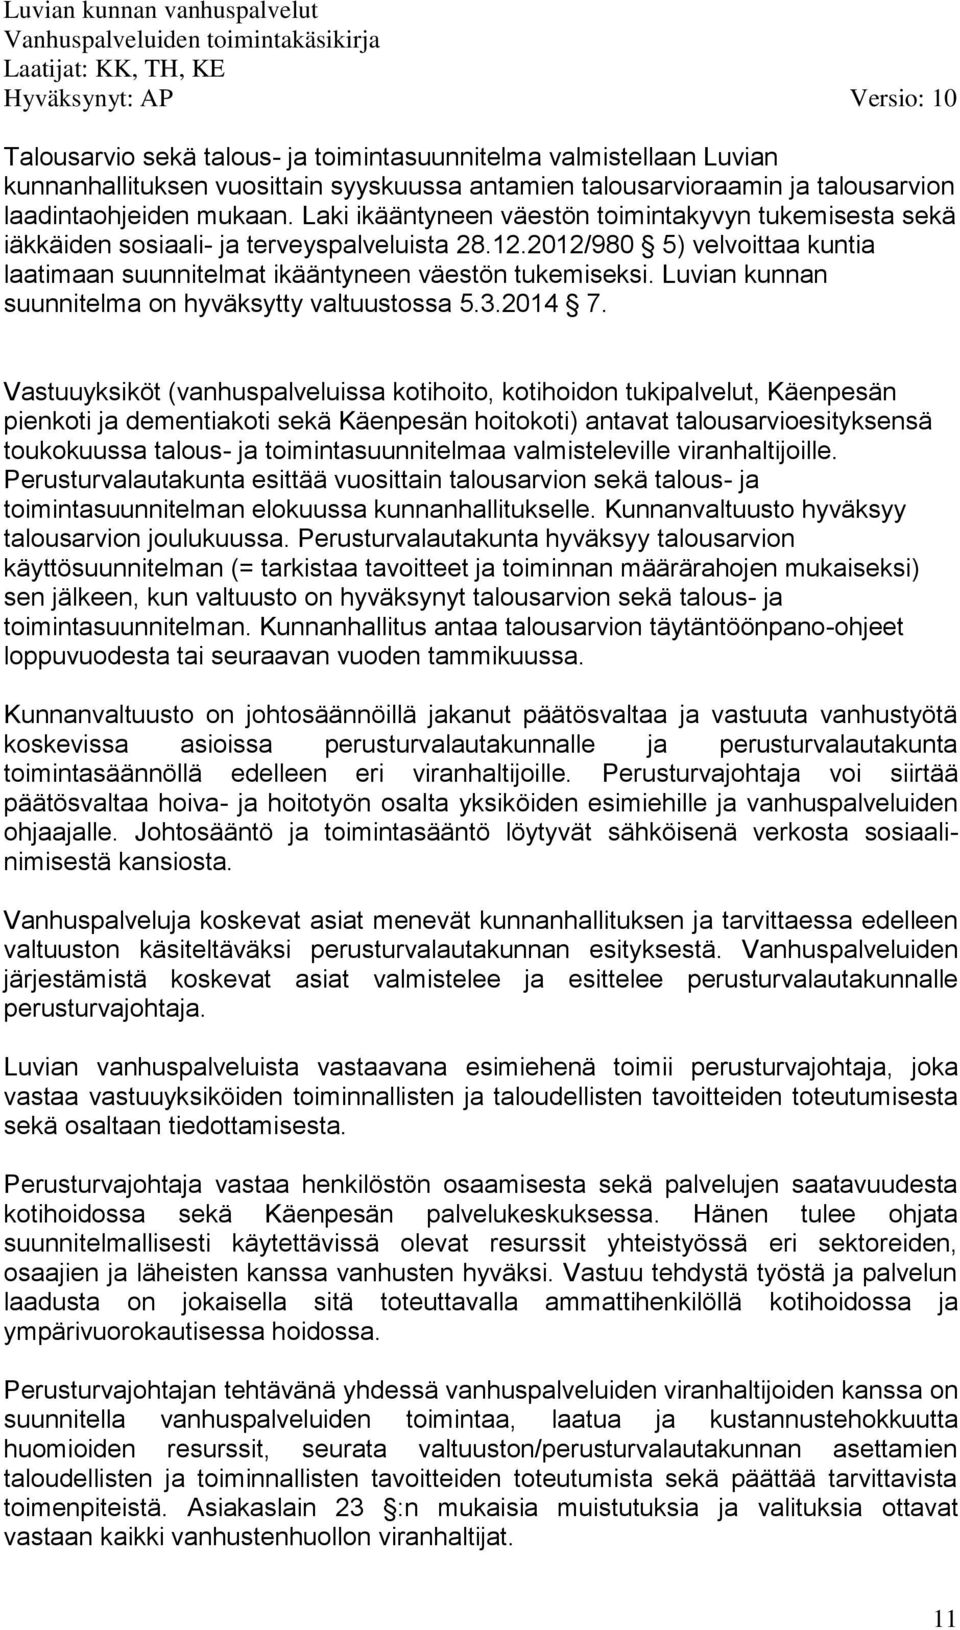 Luvian kunnan suunnitelma on hyväksytty valtuustossa 5.3.2014 7.